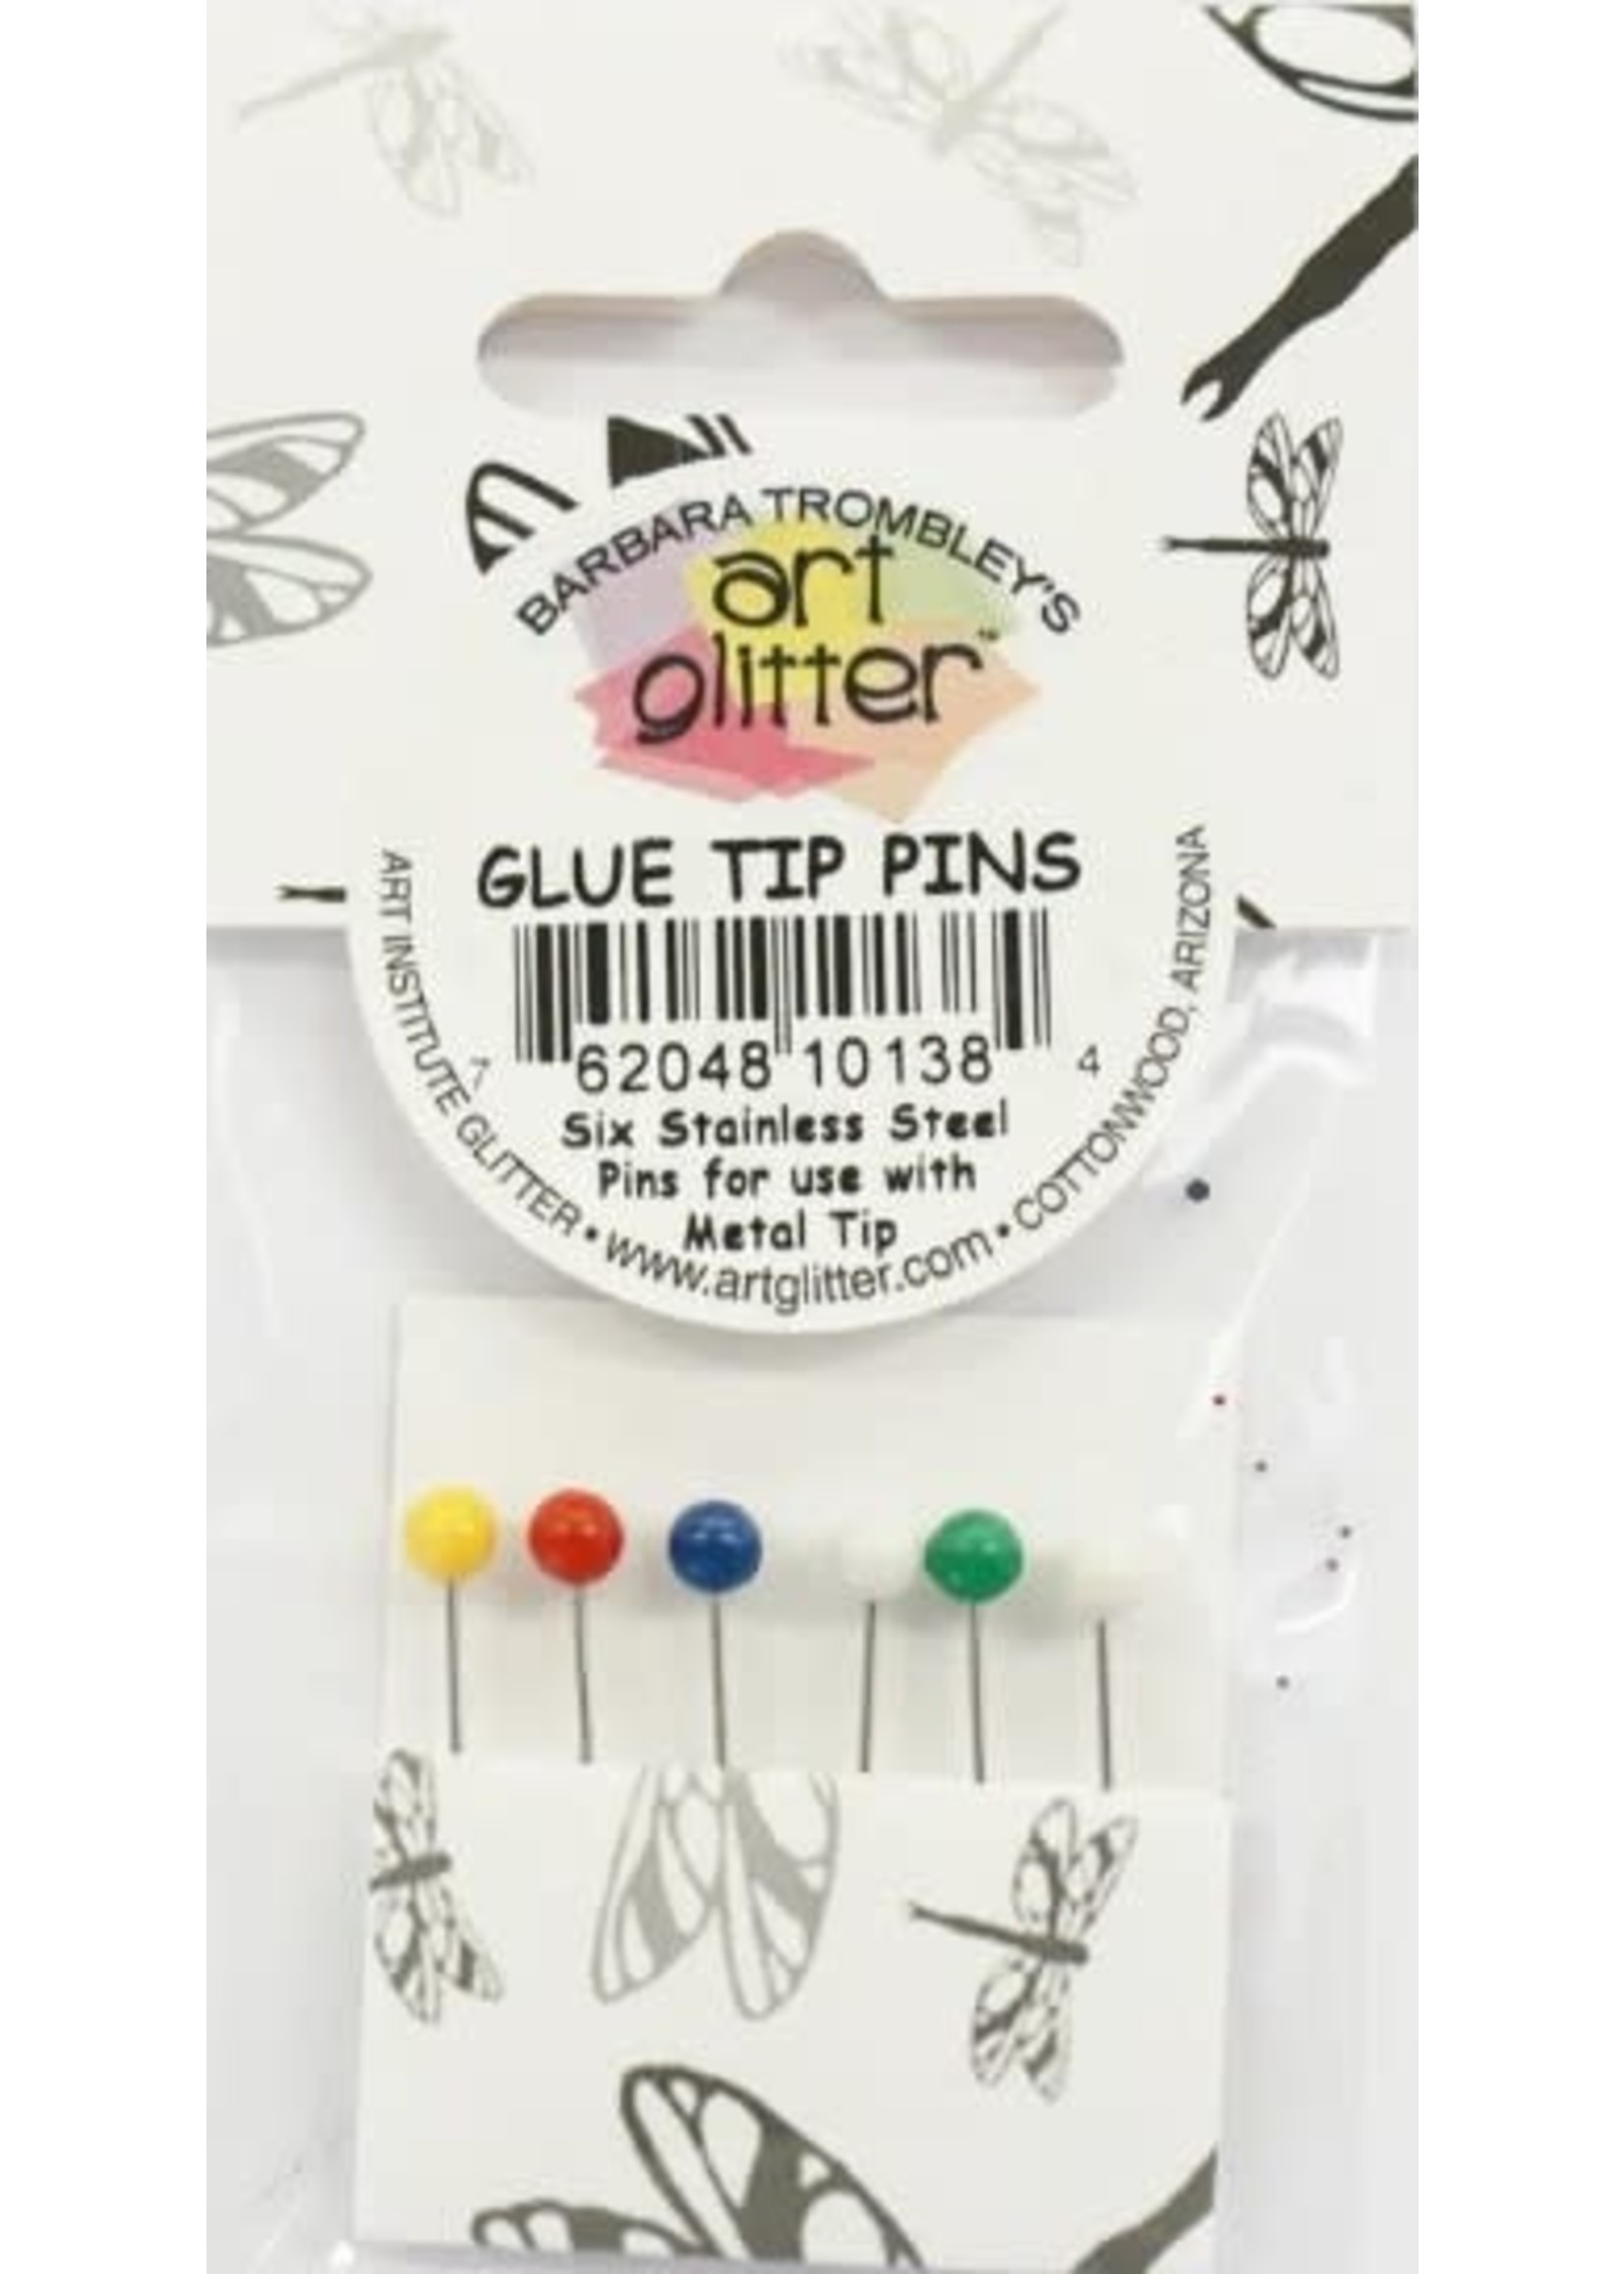 Art Glitter Institute Art Glitter Tools, Glue Tip Pins